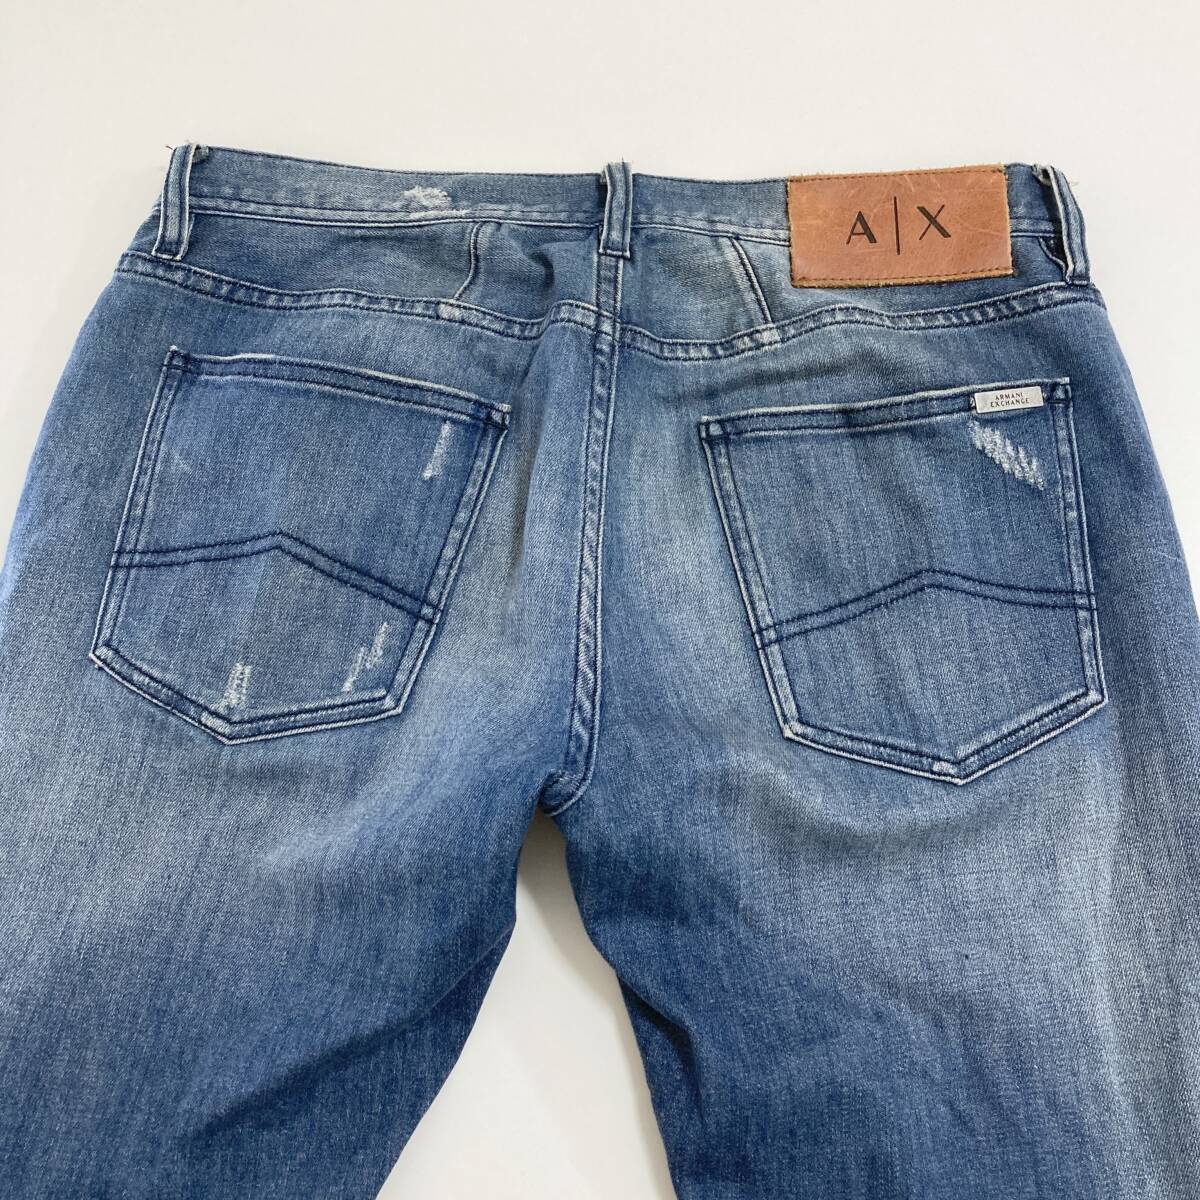 A/X ARMANI EXCHANGE used processing slim Fit Denim pants men's W32 Armani Exchange jeans ji- bread 4010214